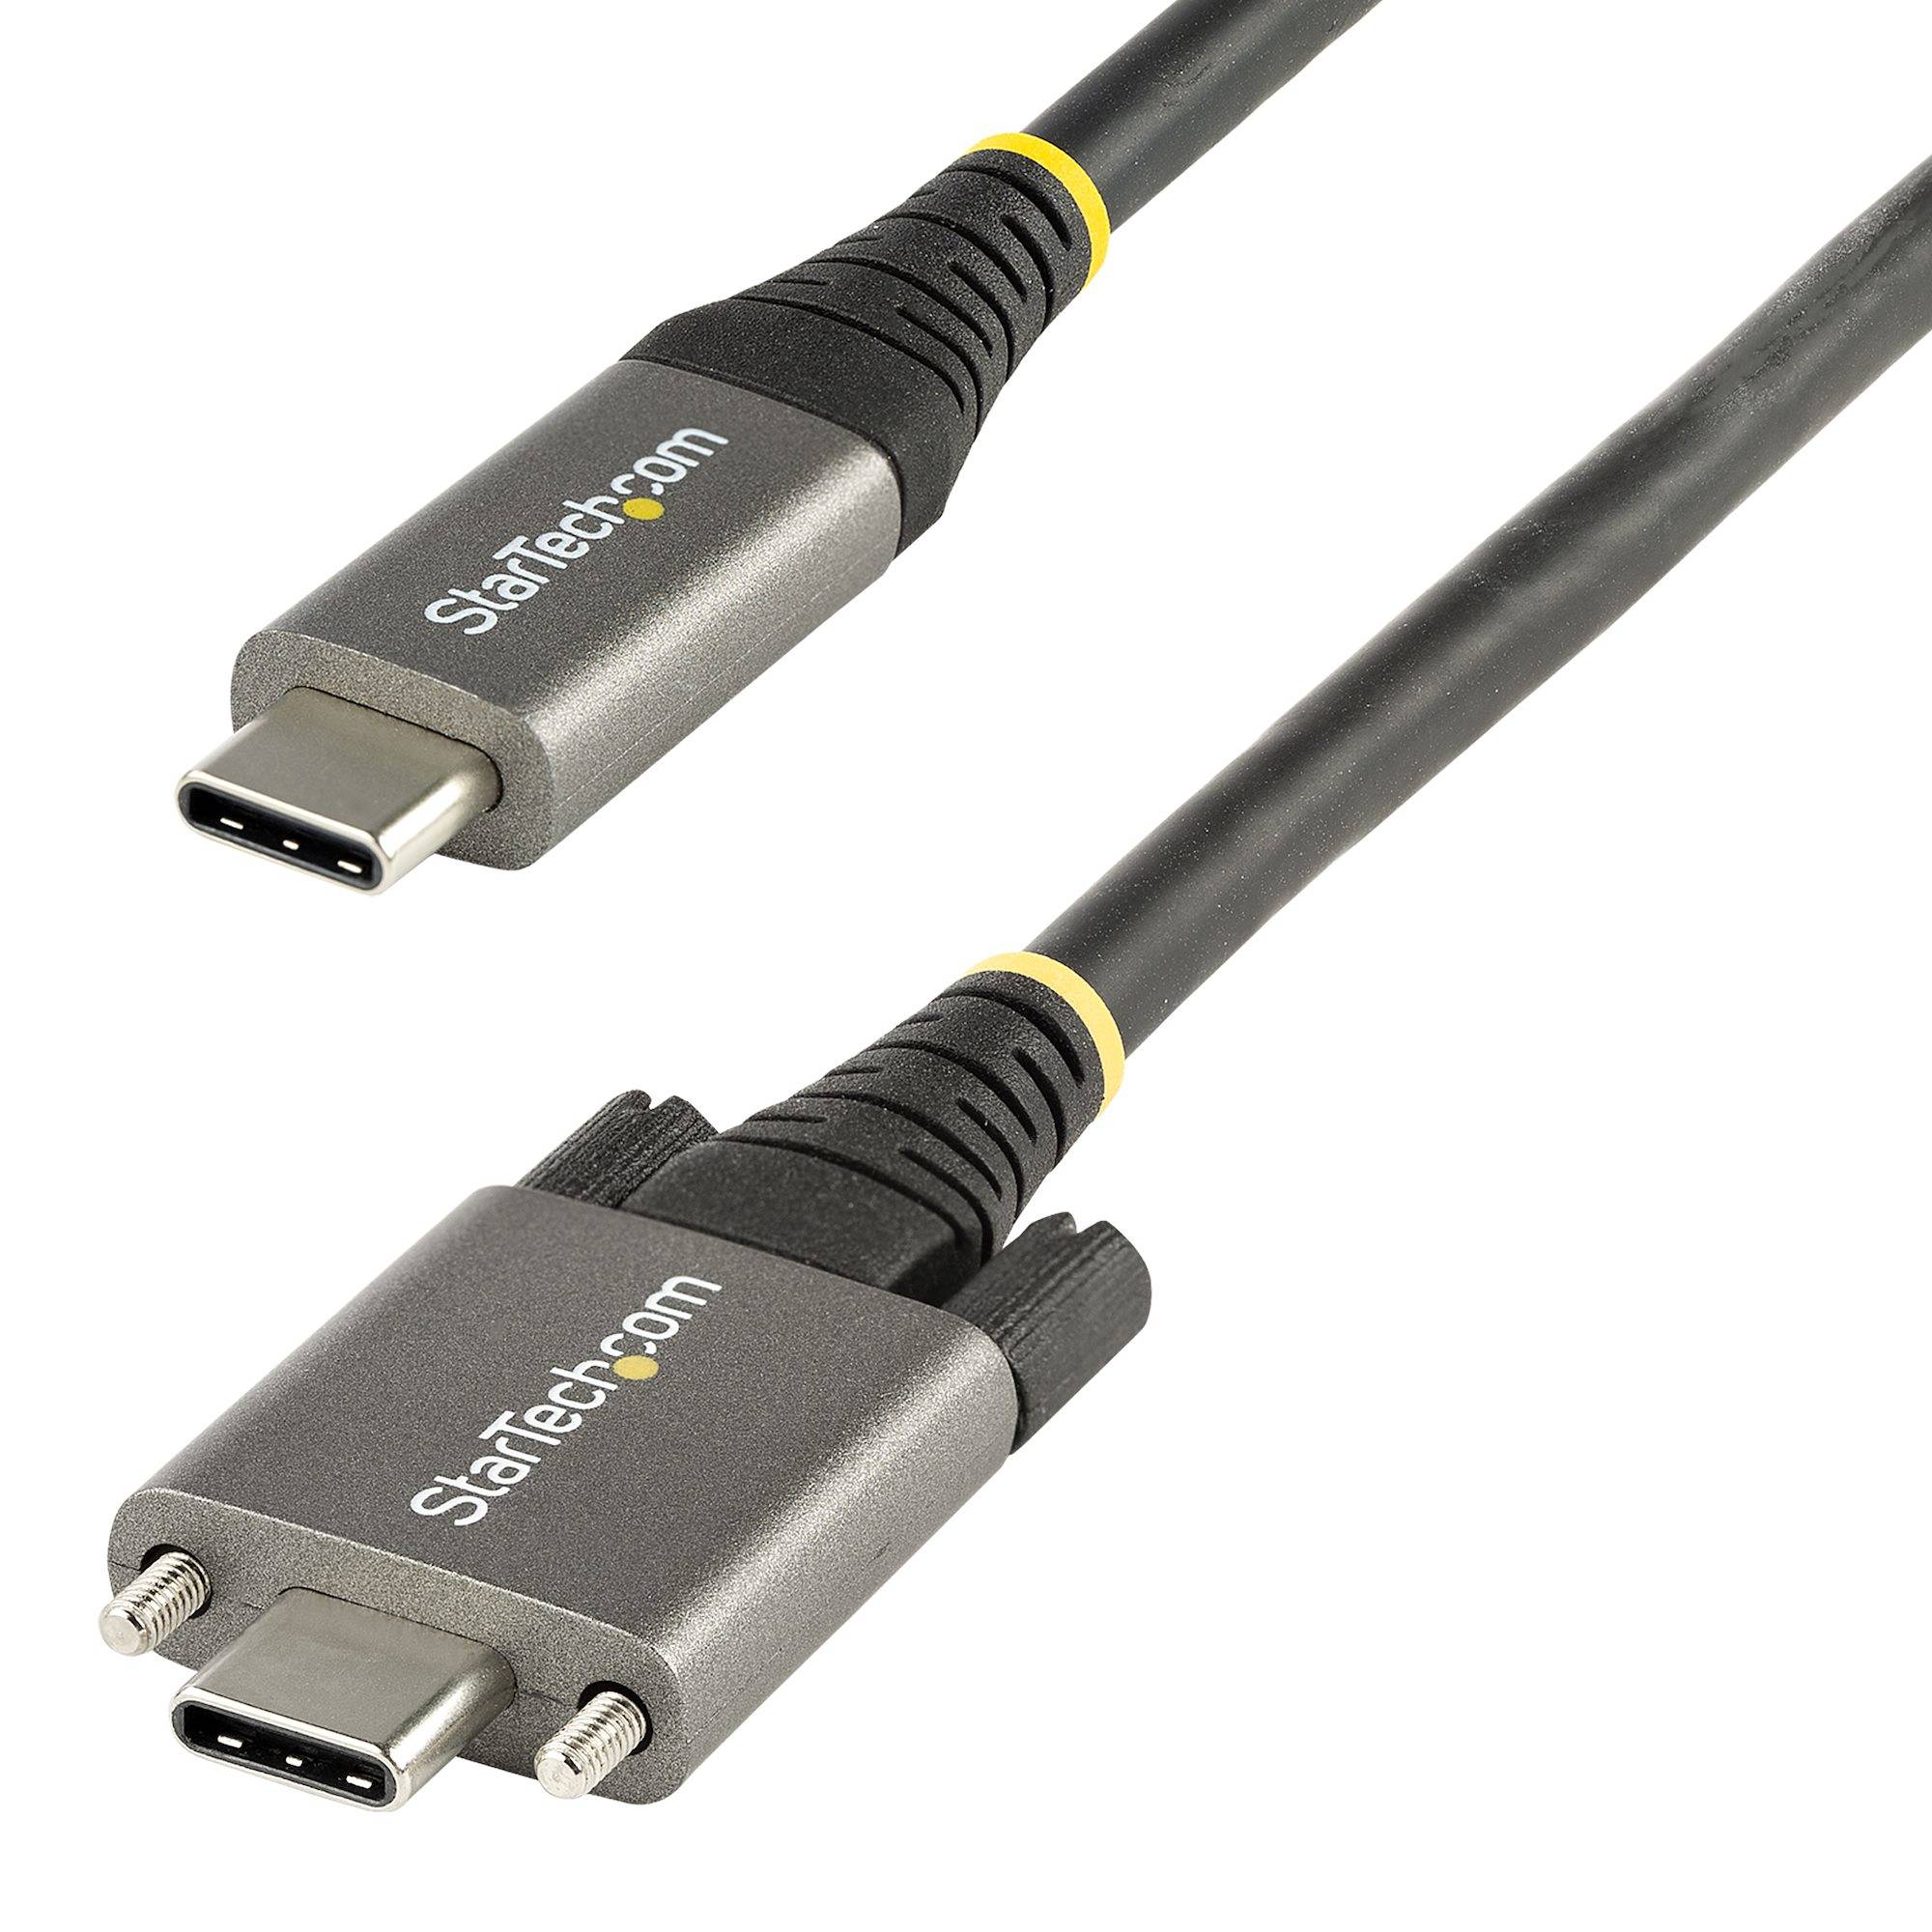 Rca Informatique - Image du produit : 50CM LOCKING USB C CABLE 10GBPS - 20